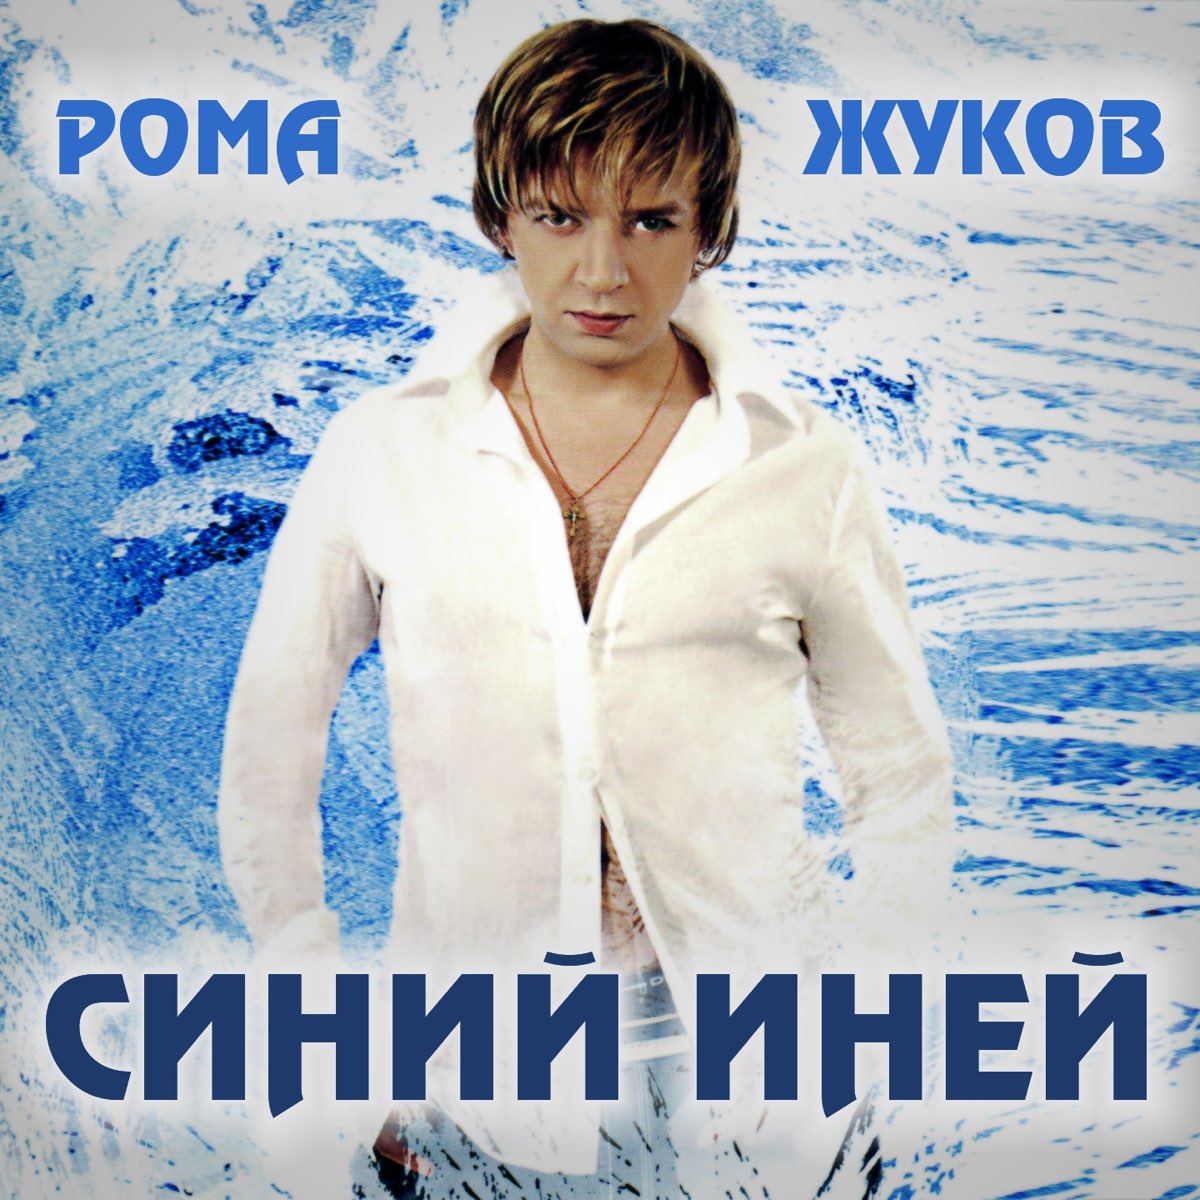 Рома Жуков первый снег альбом